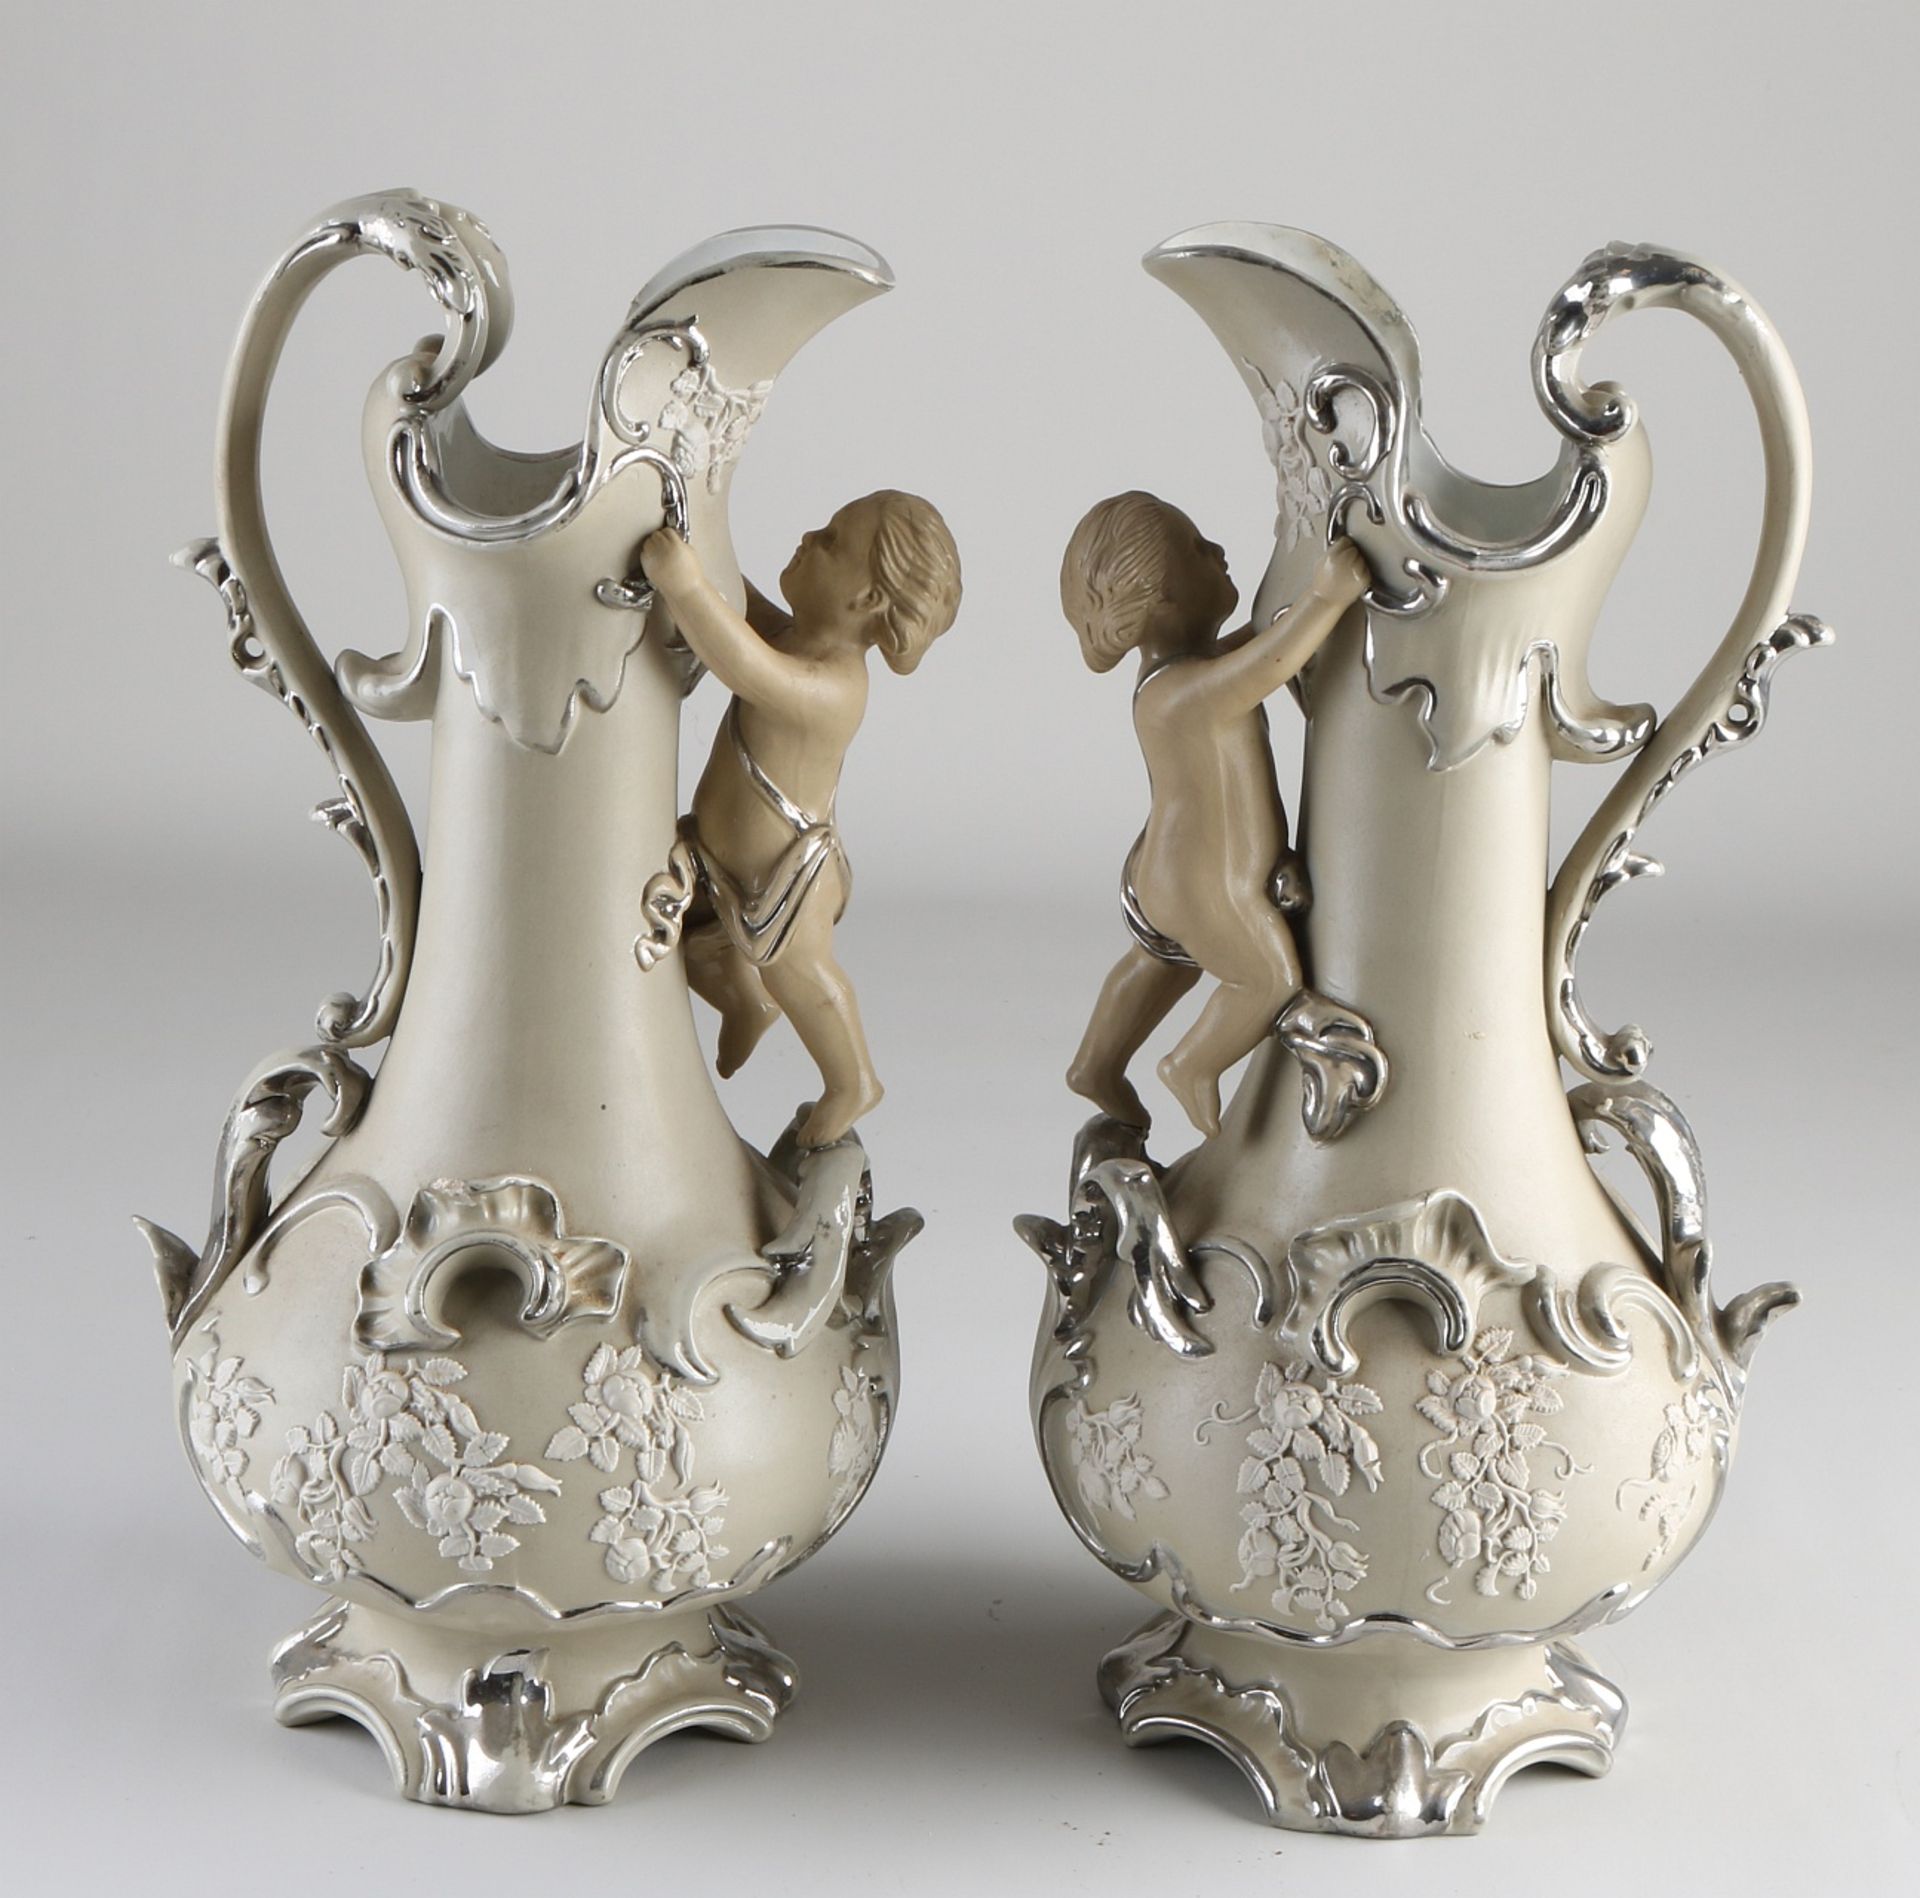 Two Villeroy & Boch jugs, 1880 - Image 2 of 3